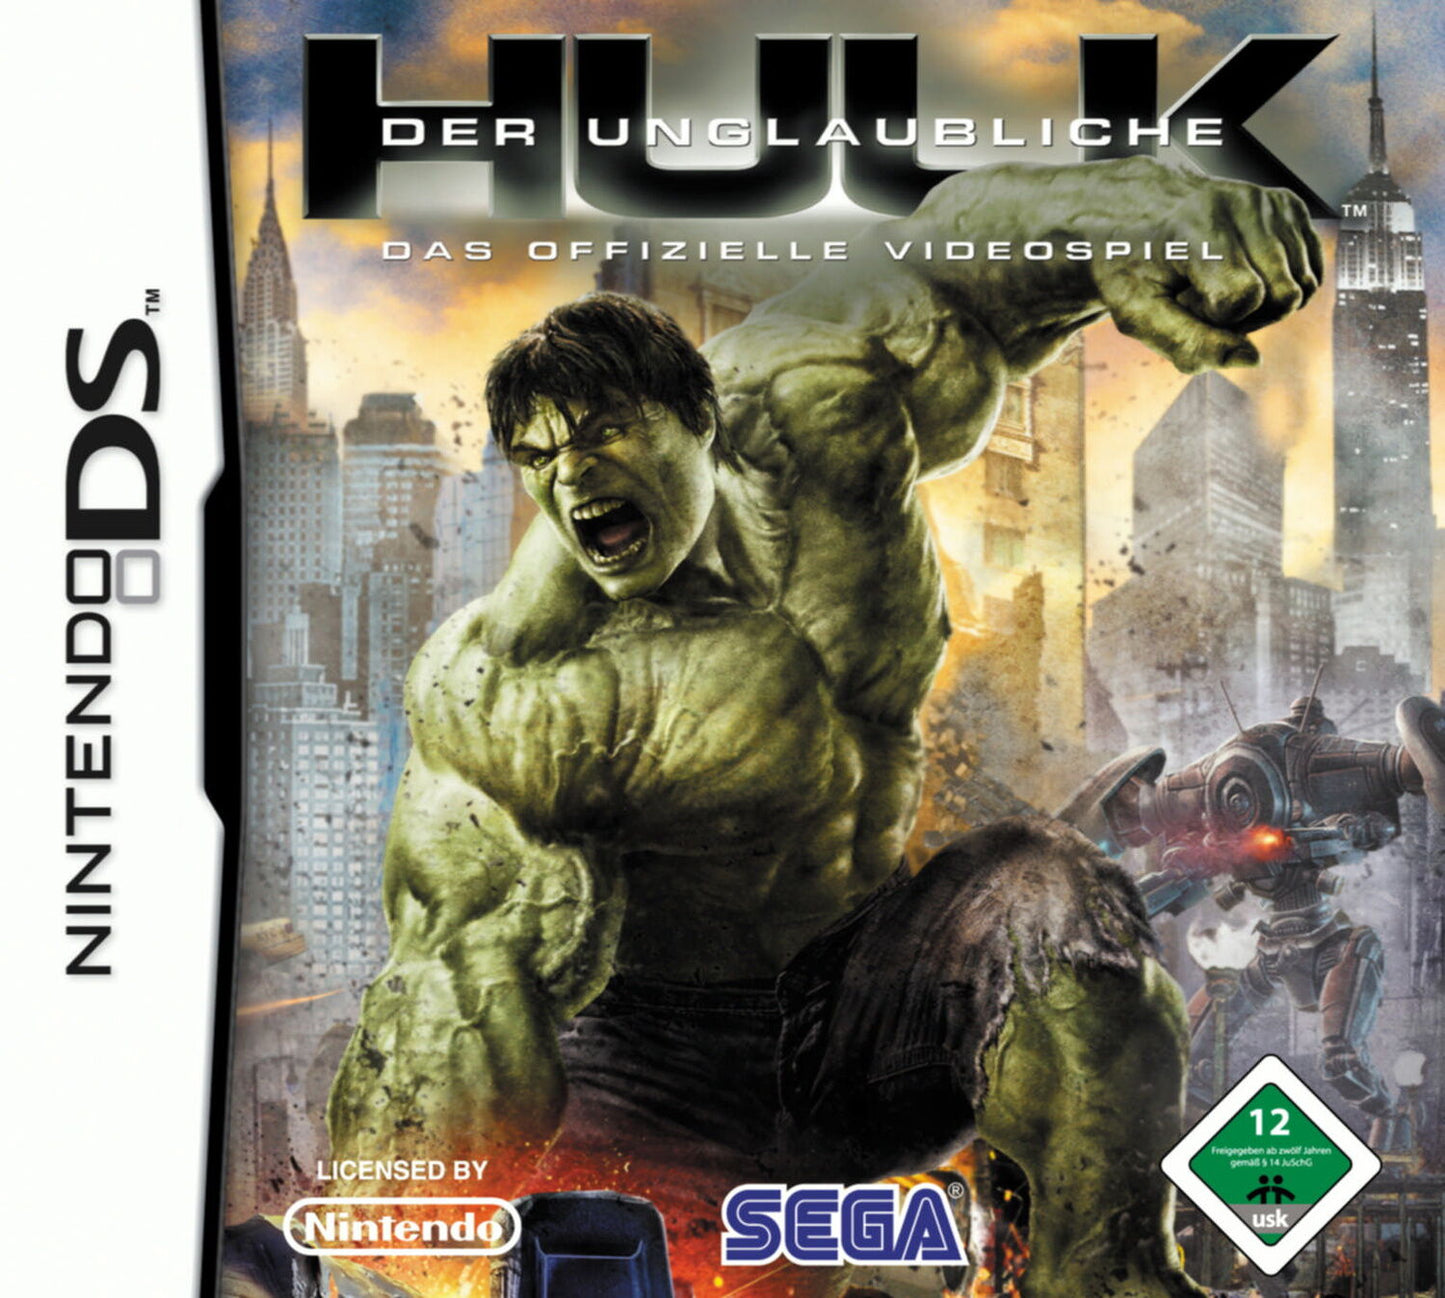 Der unglaubliche Hulk - Das offizielle Videospiel